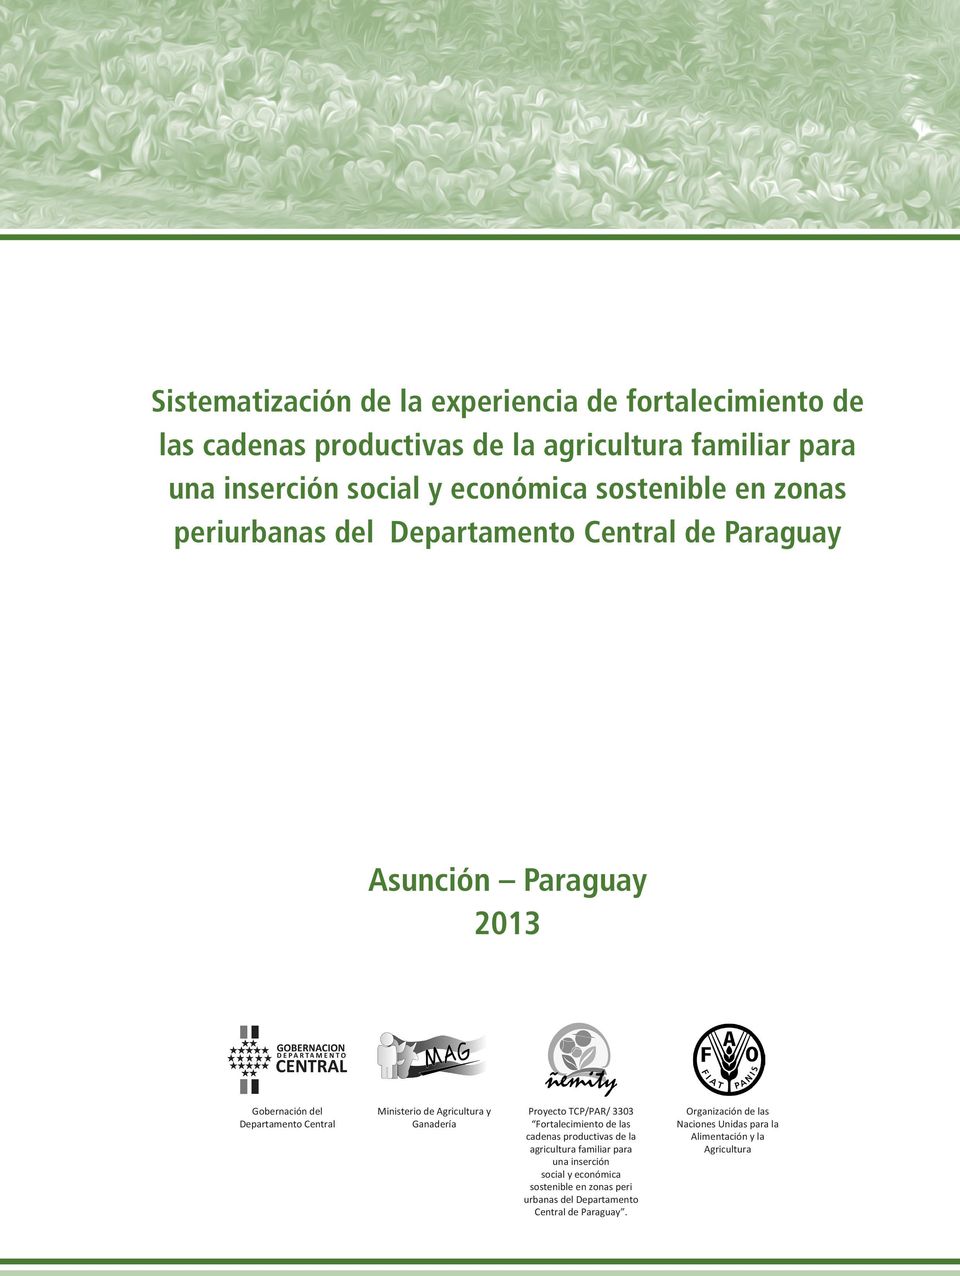 Agricultura y Ganadería Proyecto TCP/PAR/ 3303 Fortalecimiento de las cadenas productivas de la agricultura familiar para una inserción social y